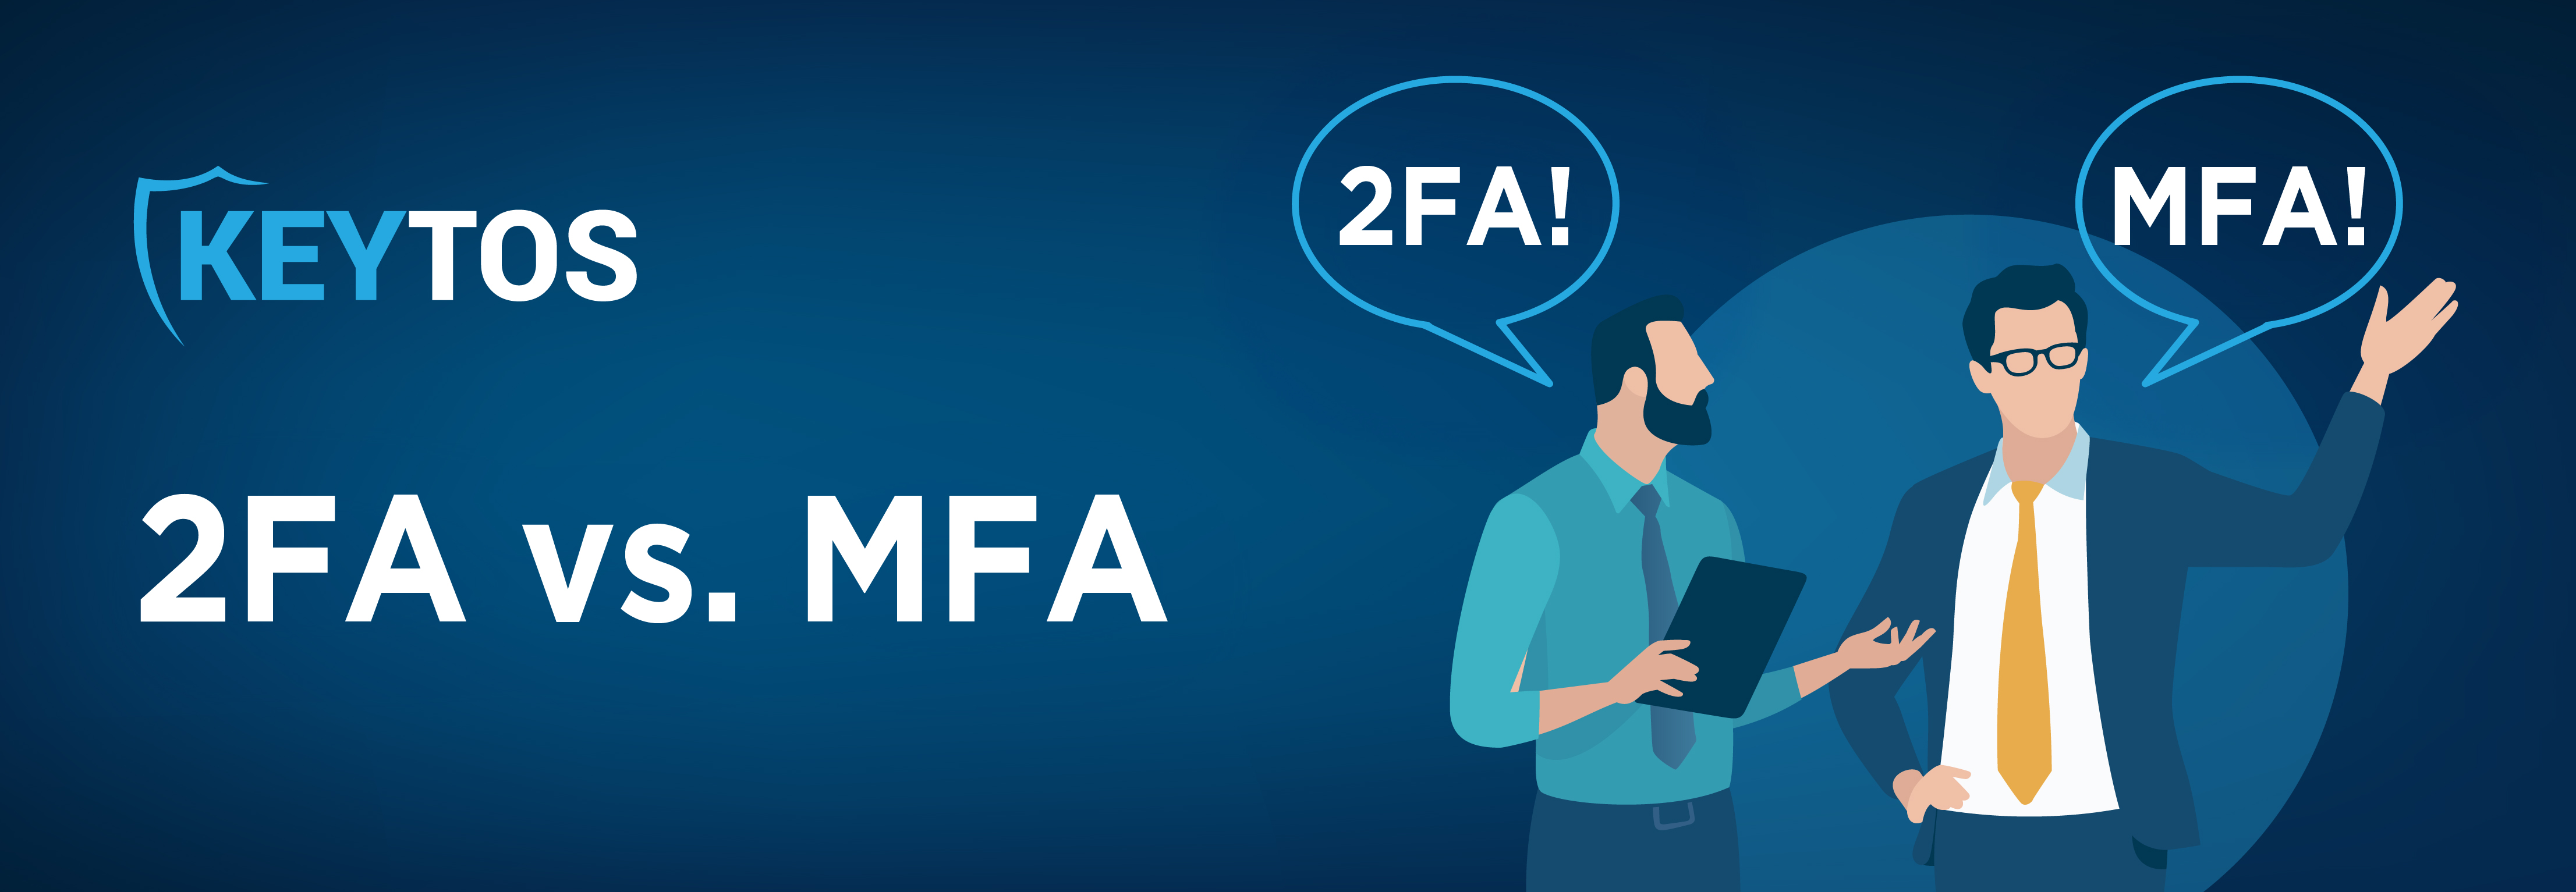 MFA vs 2FA, multi-factor authentication vs two-factor authentication, two factor vs multi factor authentication